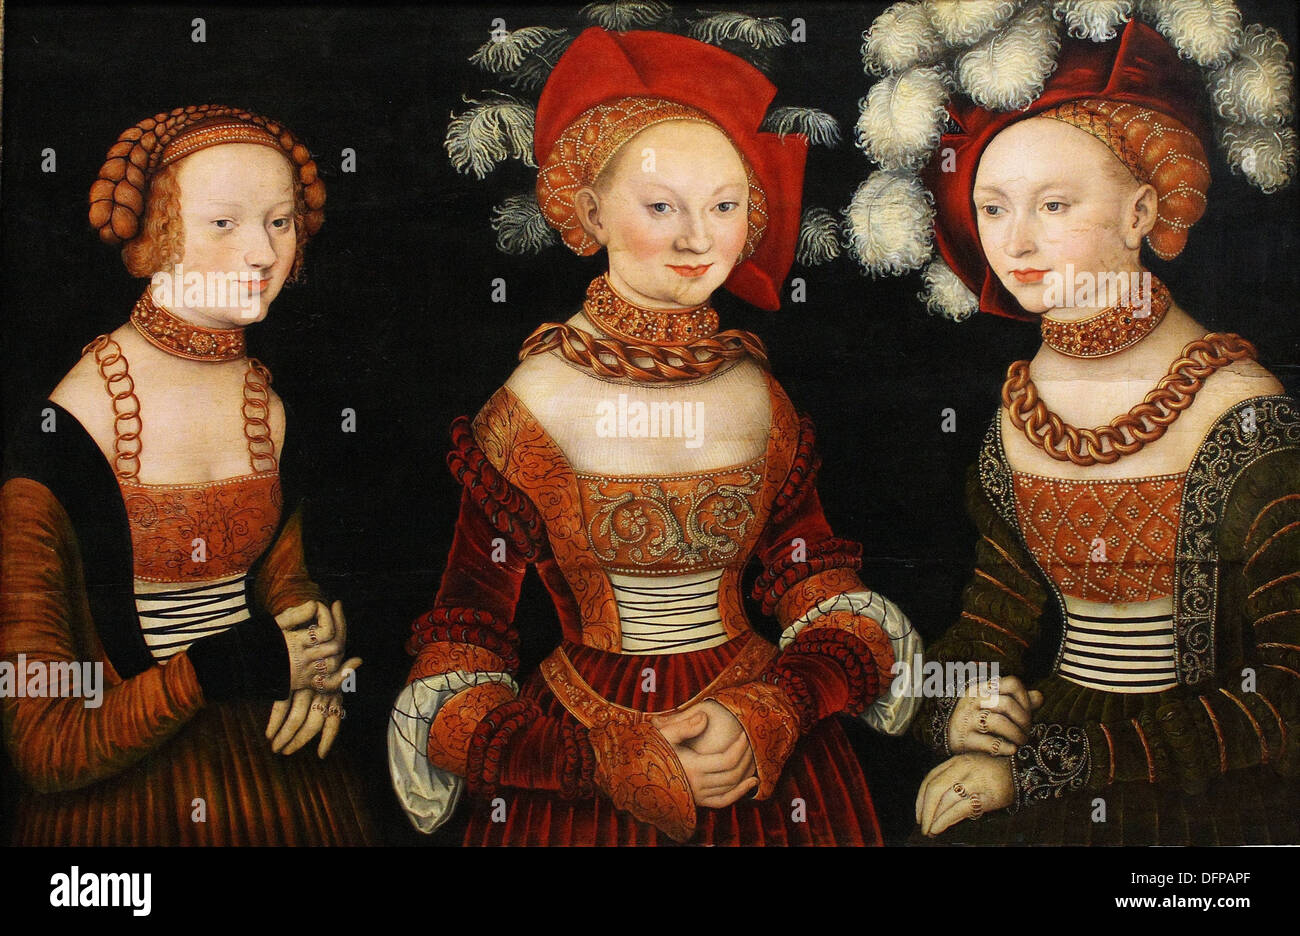 Lucas CRANACH der ältere - die sächsischen Prinzessinnen (Sibyl, Emilia und Sidonia von Sachsen) - 1530 - Kunsthistorisches Museum - Wien Stockfoto